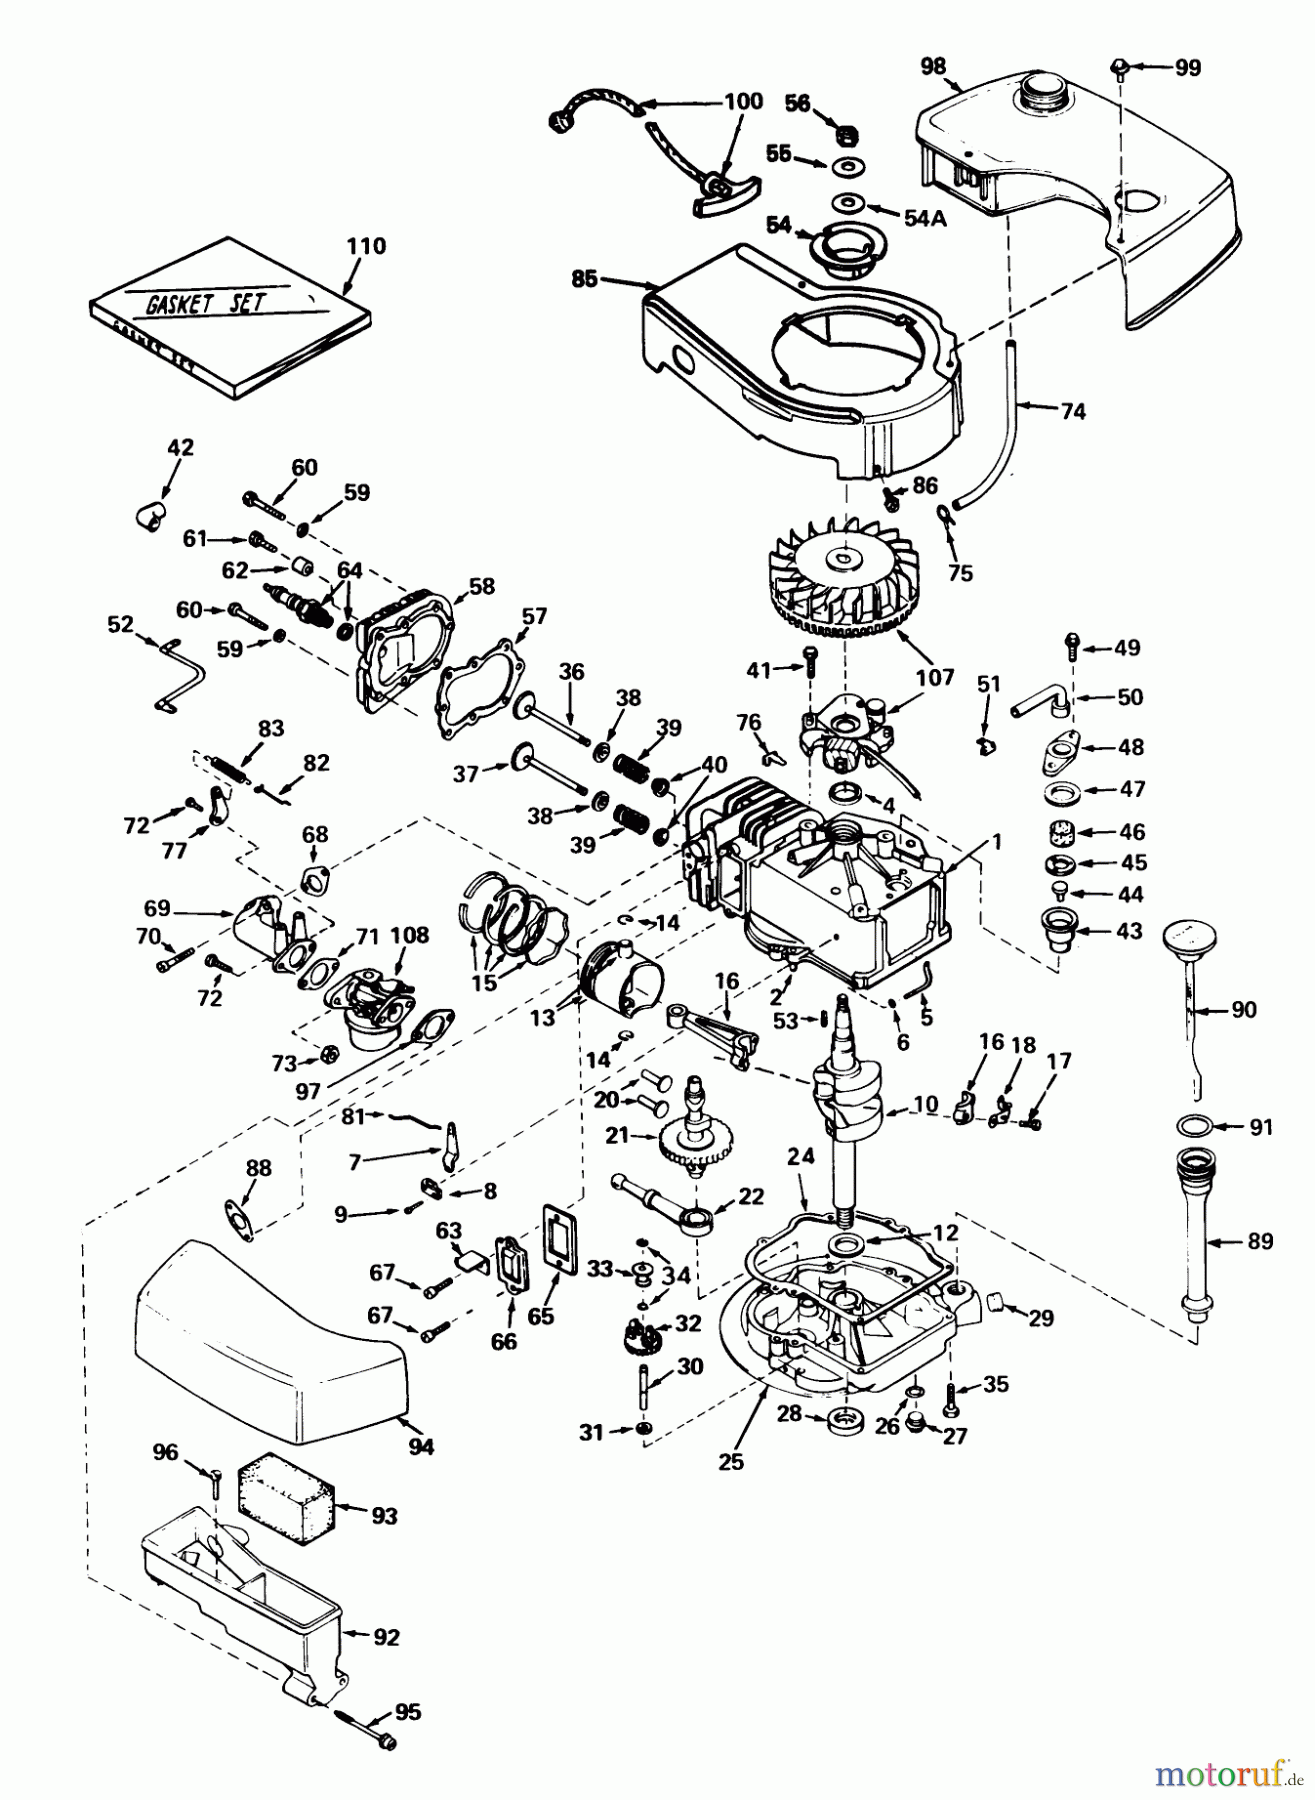  Toro Neu Mowers, Walk-Behind Seite 1 20660 - Toro Lawnmower, 1975 (5000001-5999999) ENGINE TECUMSEH MODEL NO. TNT 120-12004